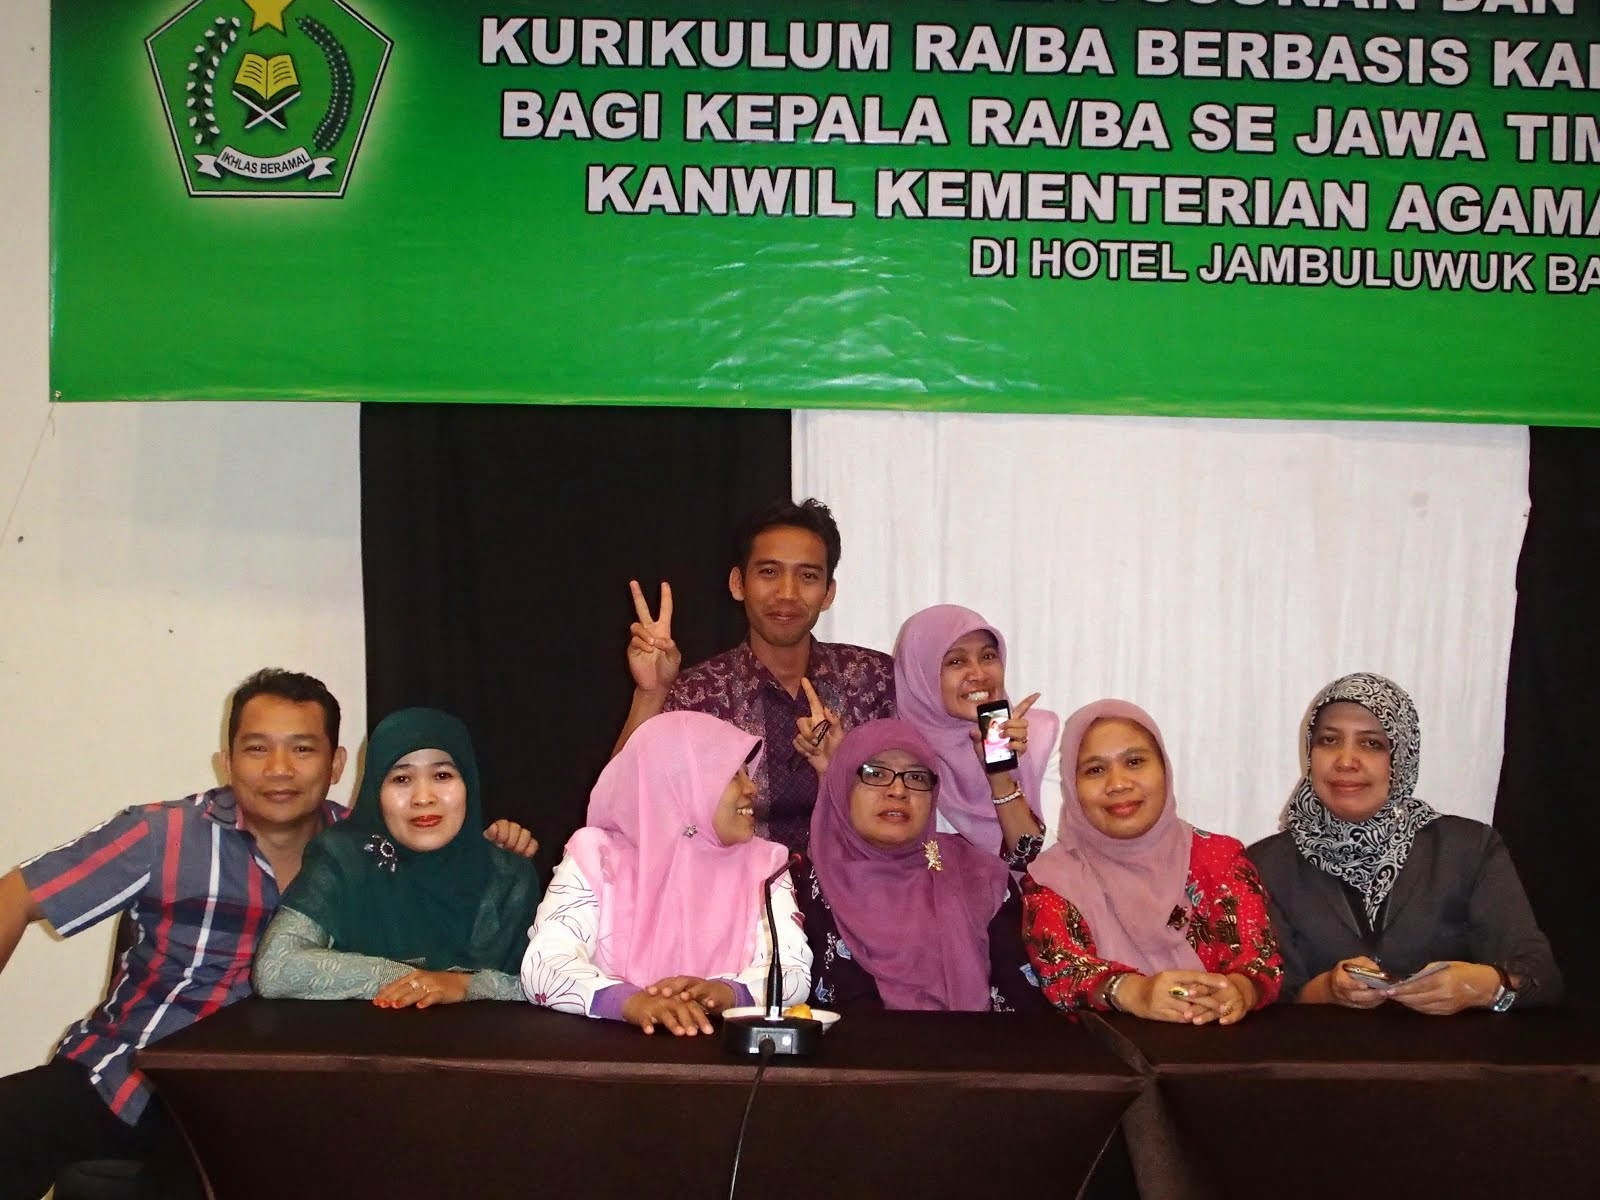 Workshop K13 Malang